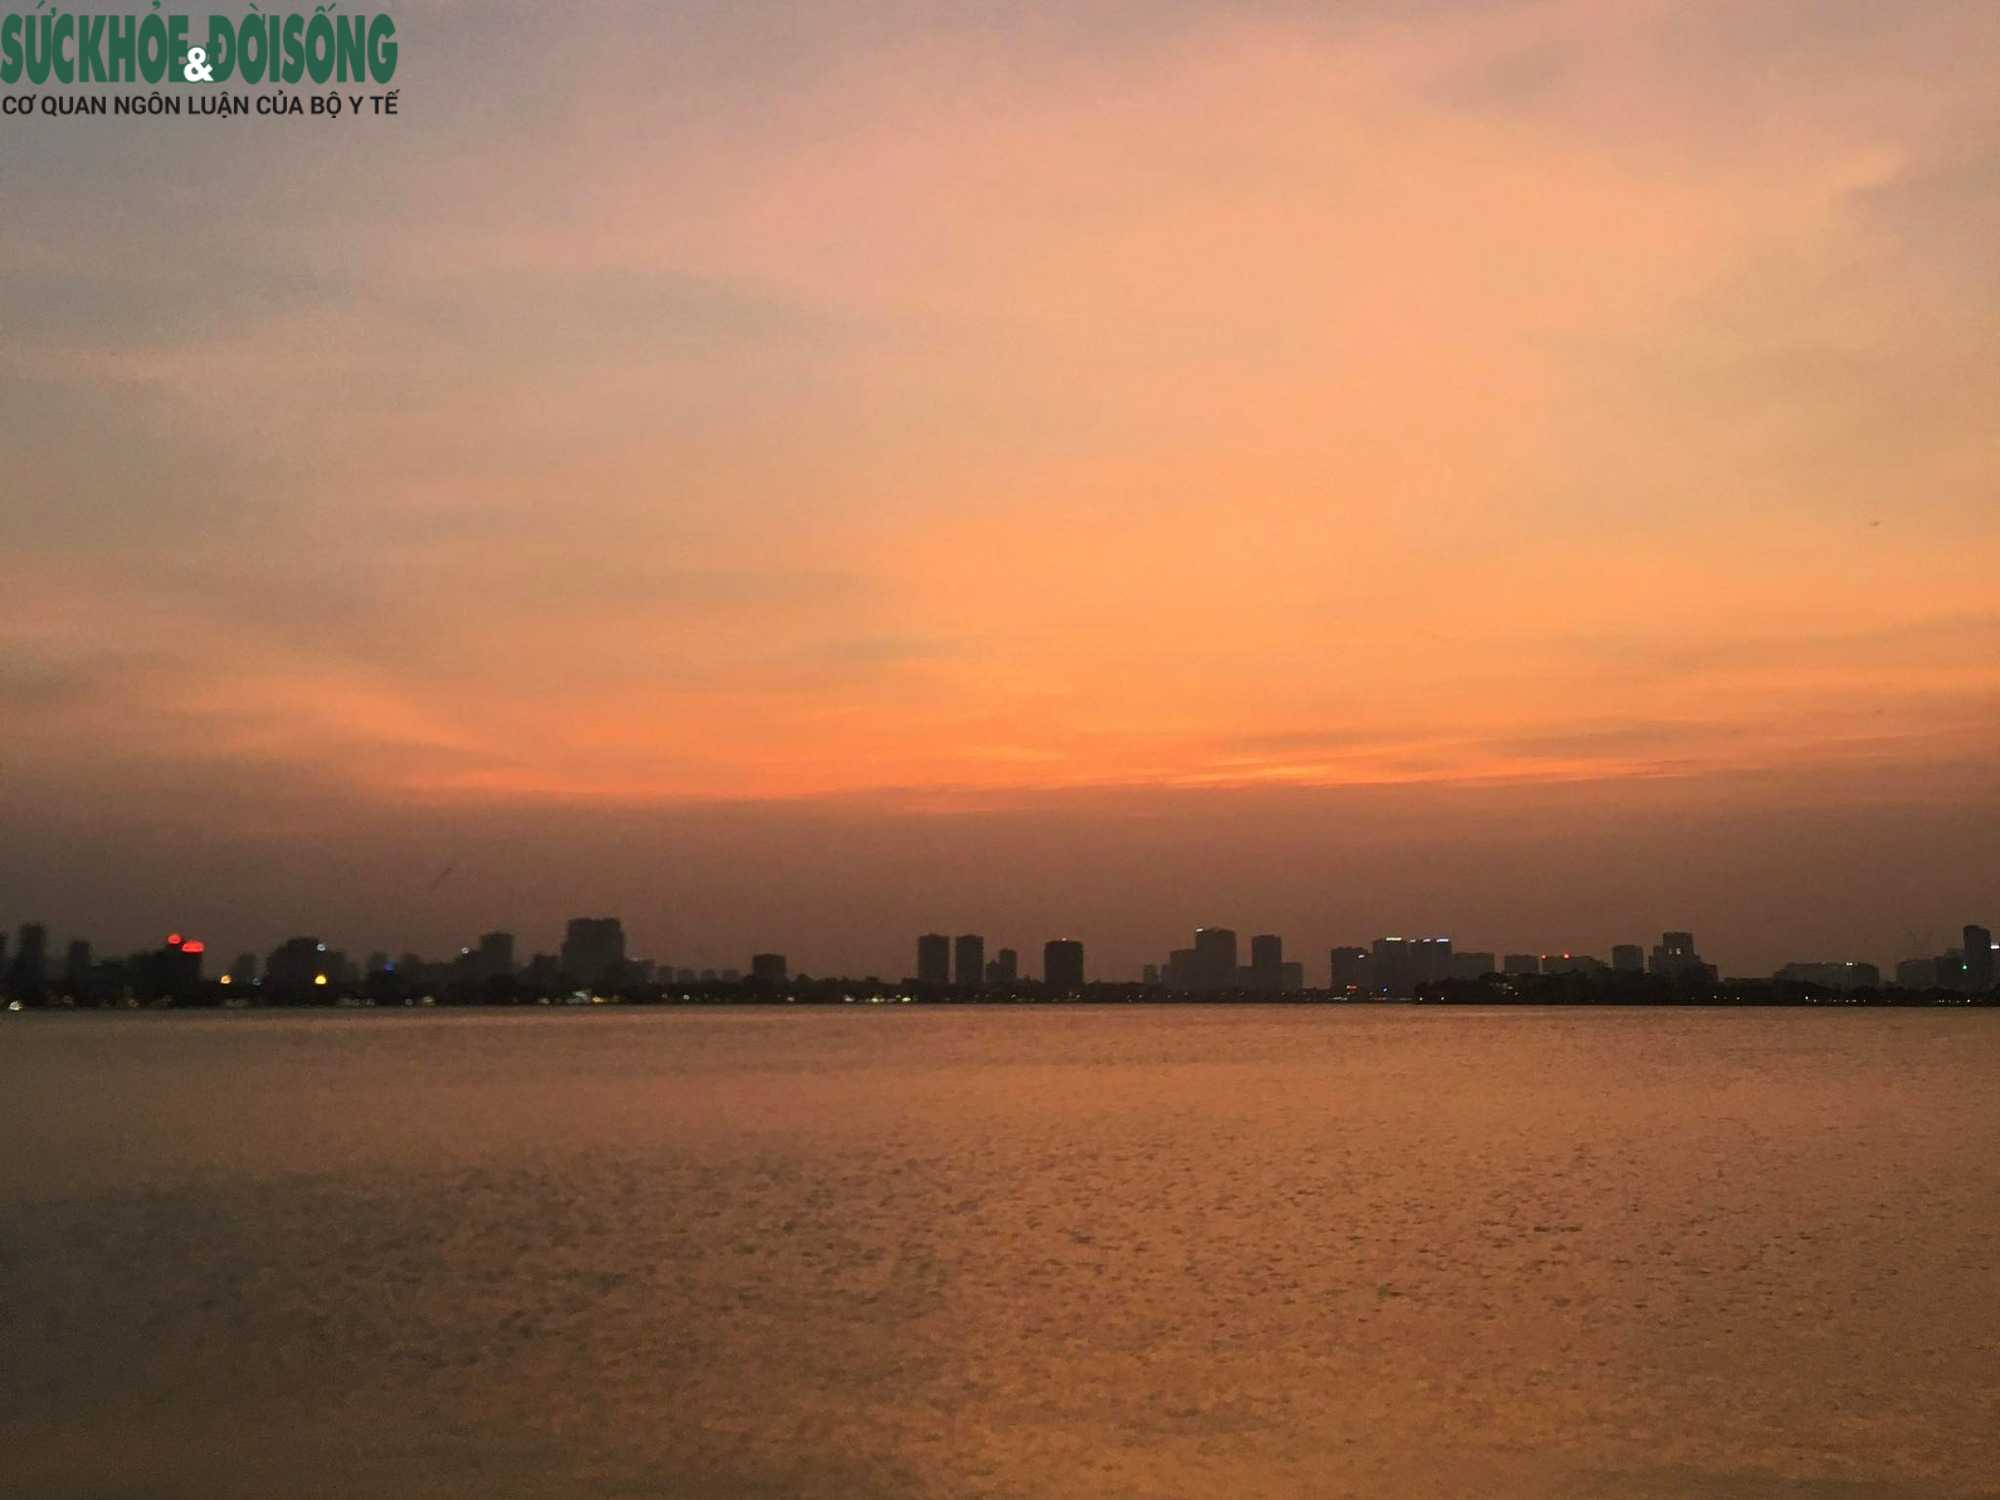 Hồ Tây là một trong những hồ nước lớn nhất ở Hà Nội và là nơi thư giãn tuyệt vời cho người dân thủ đô. Hãy đến Hồ Tây để thưởng thức cảnh quan đẹp và tìm kiếm những khoảnh khắc bình yên trong cái đô thị hối hả.